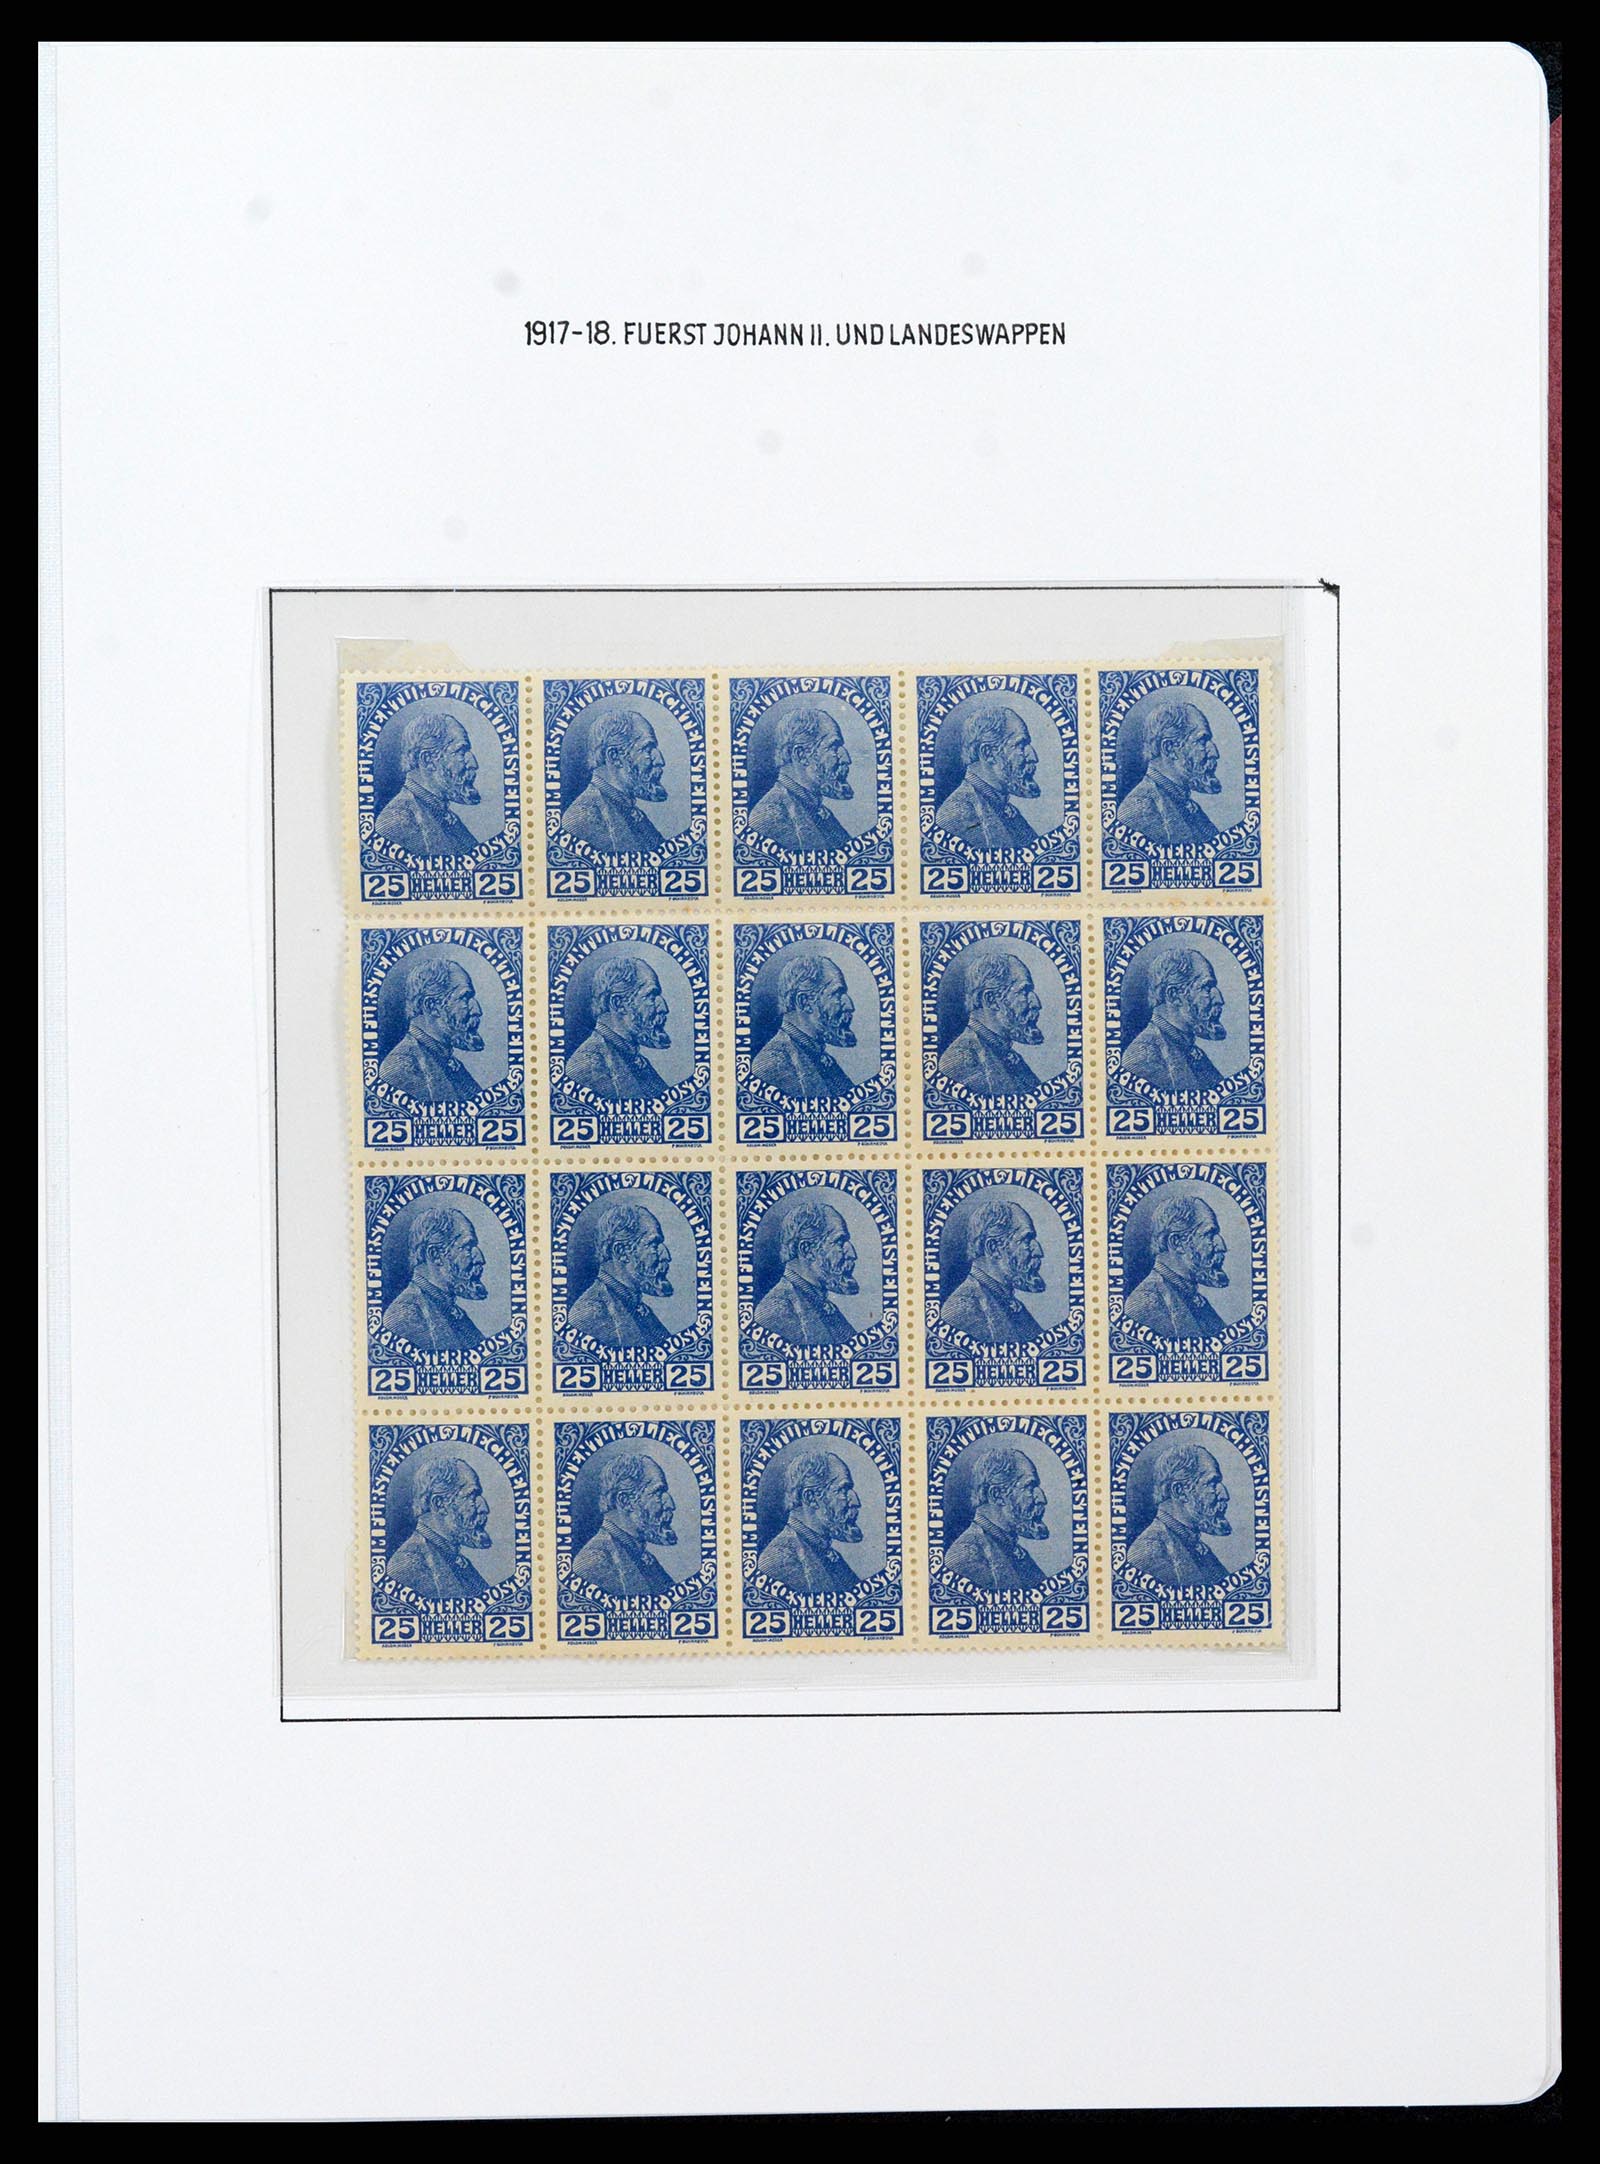 37150 0036 - Stamp collection 37150 Liechtenstein supercollection 1912-1962.